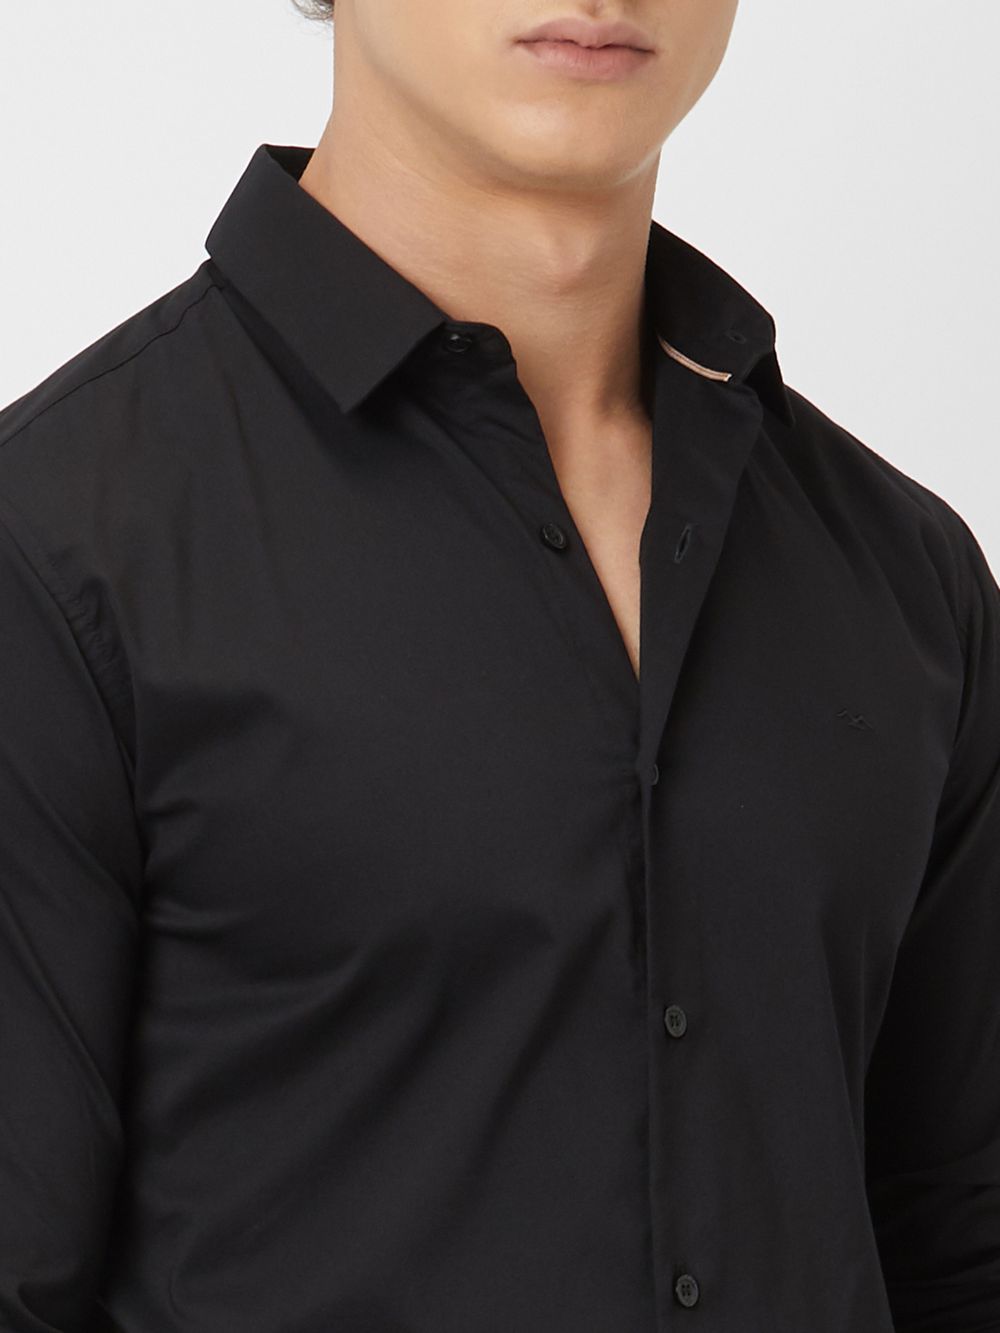 Black Lightweight Plain Stretch Shirt